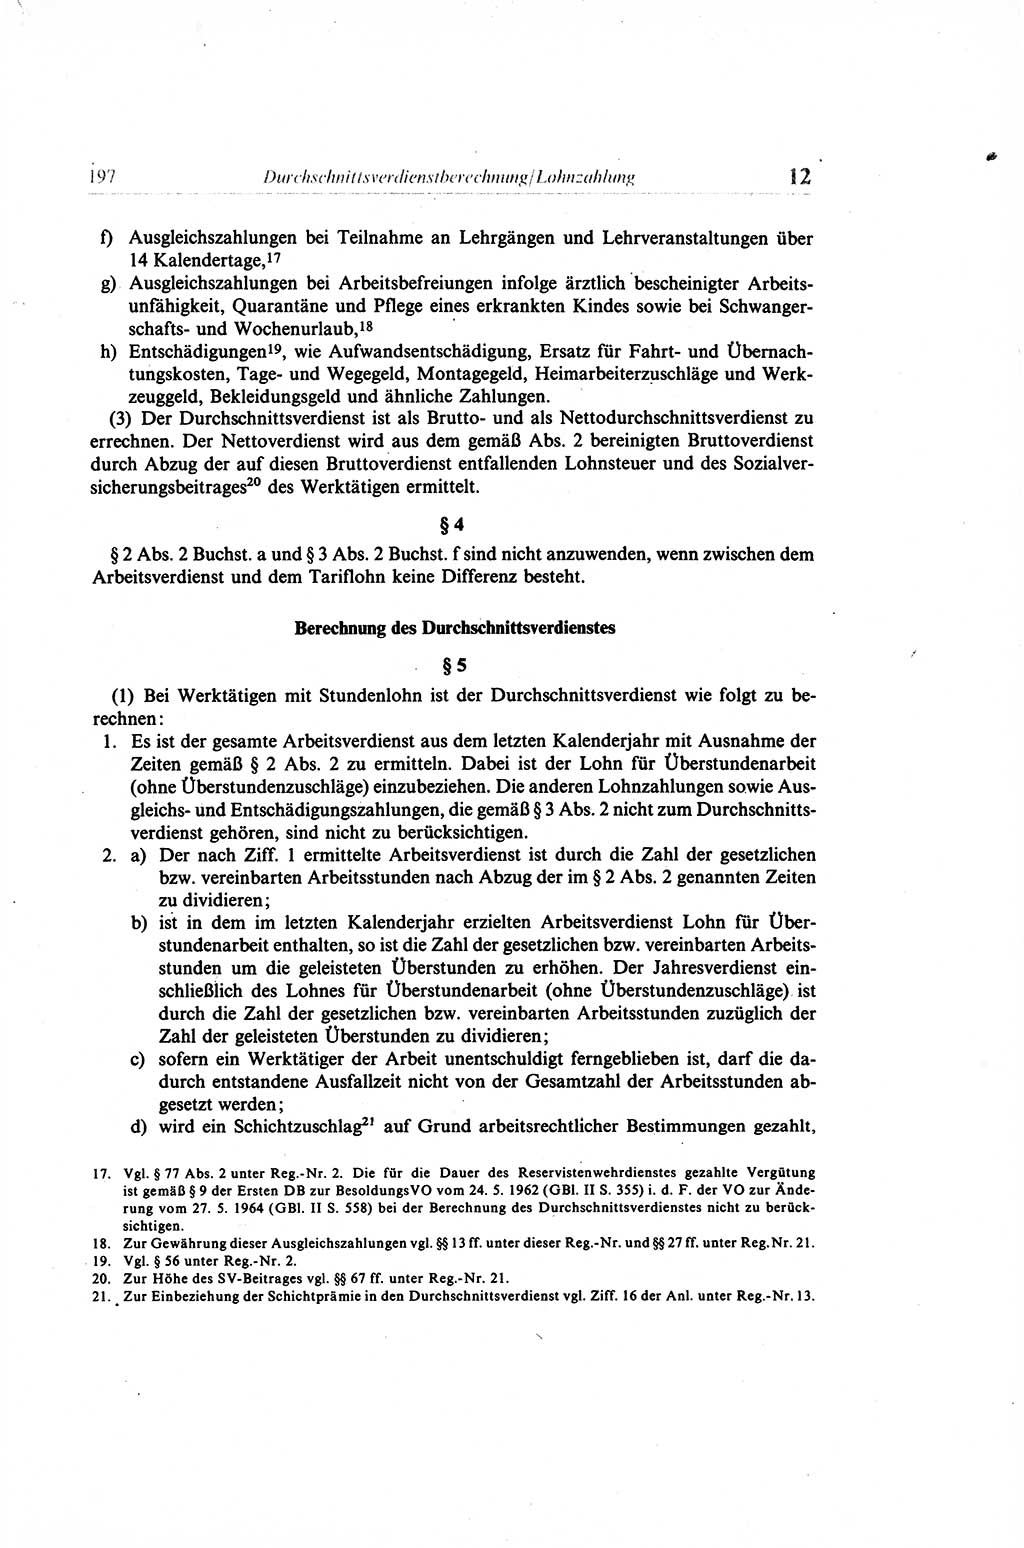 Gesetzbuch der Arbeit (GBA) und andere ausgewählte rechtliche Bestimmungen [Deutsche Demokratische Republik (DDR)] 1968, Seite 197 (GBA DDR 1968, S. 197)